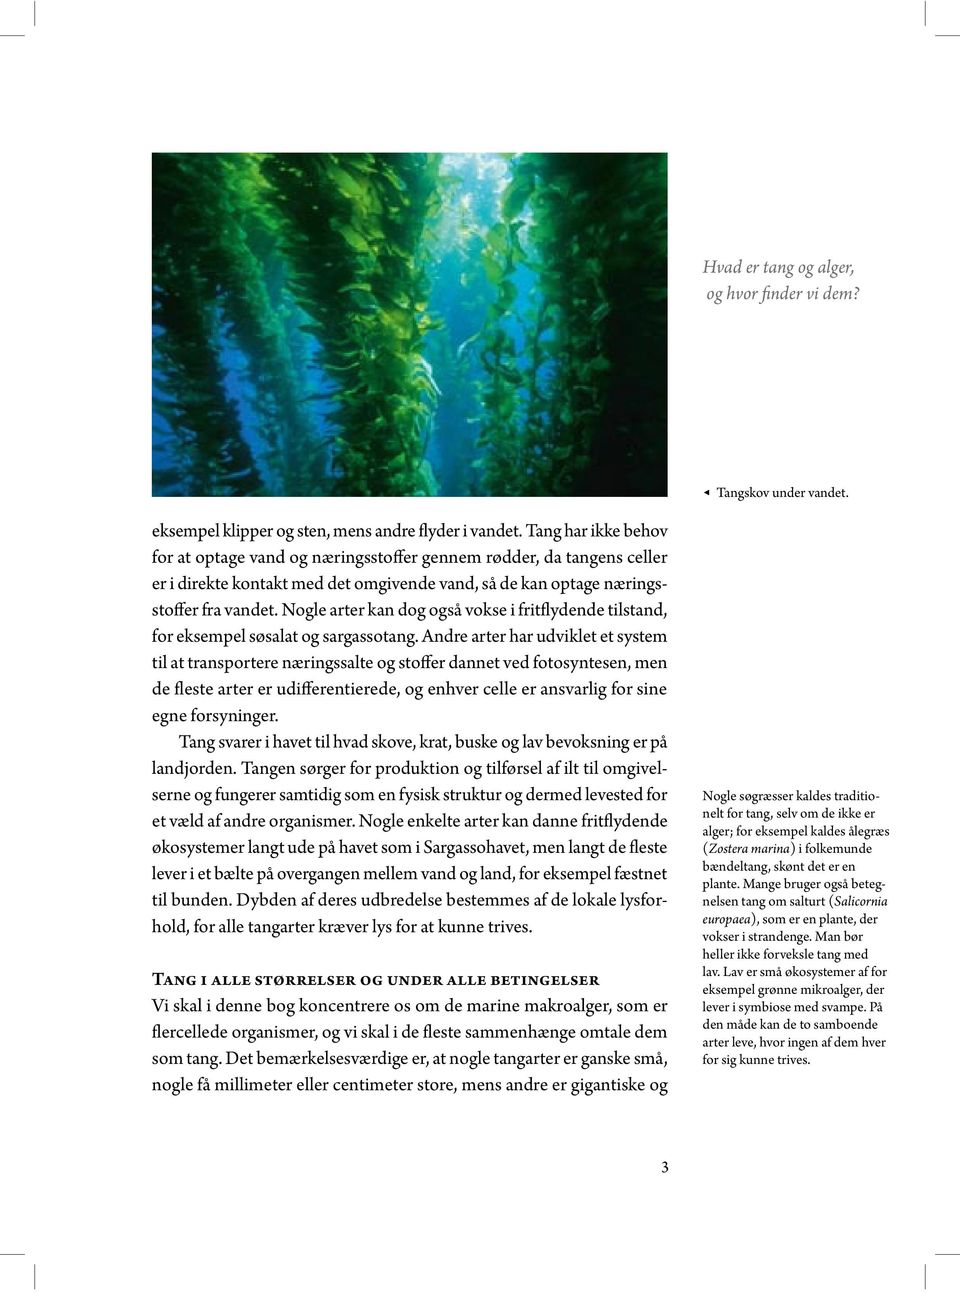 Hvad er tang og alger, og hvor finder vi dem? - PDF Free Download